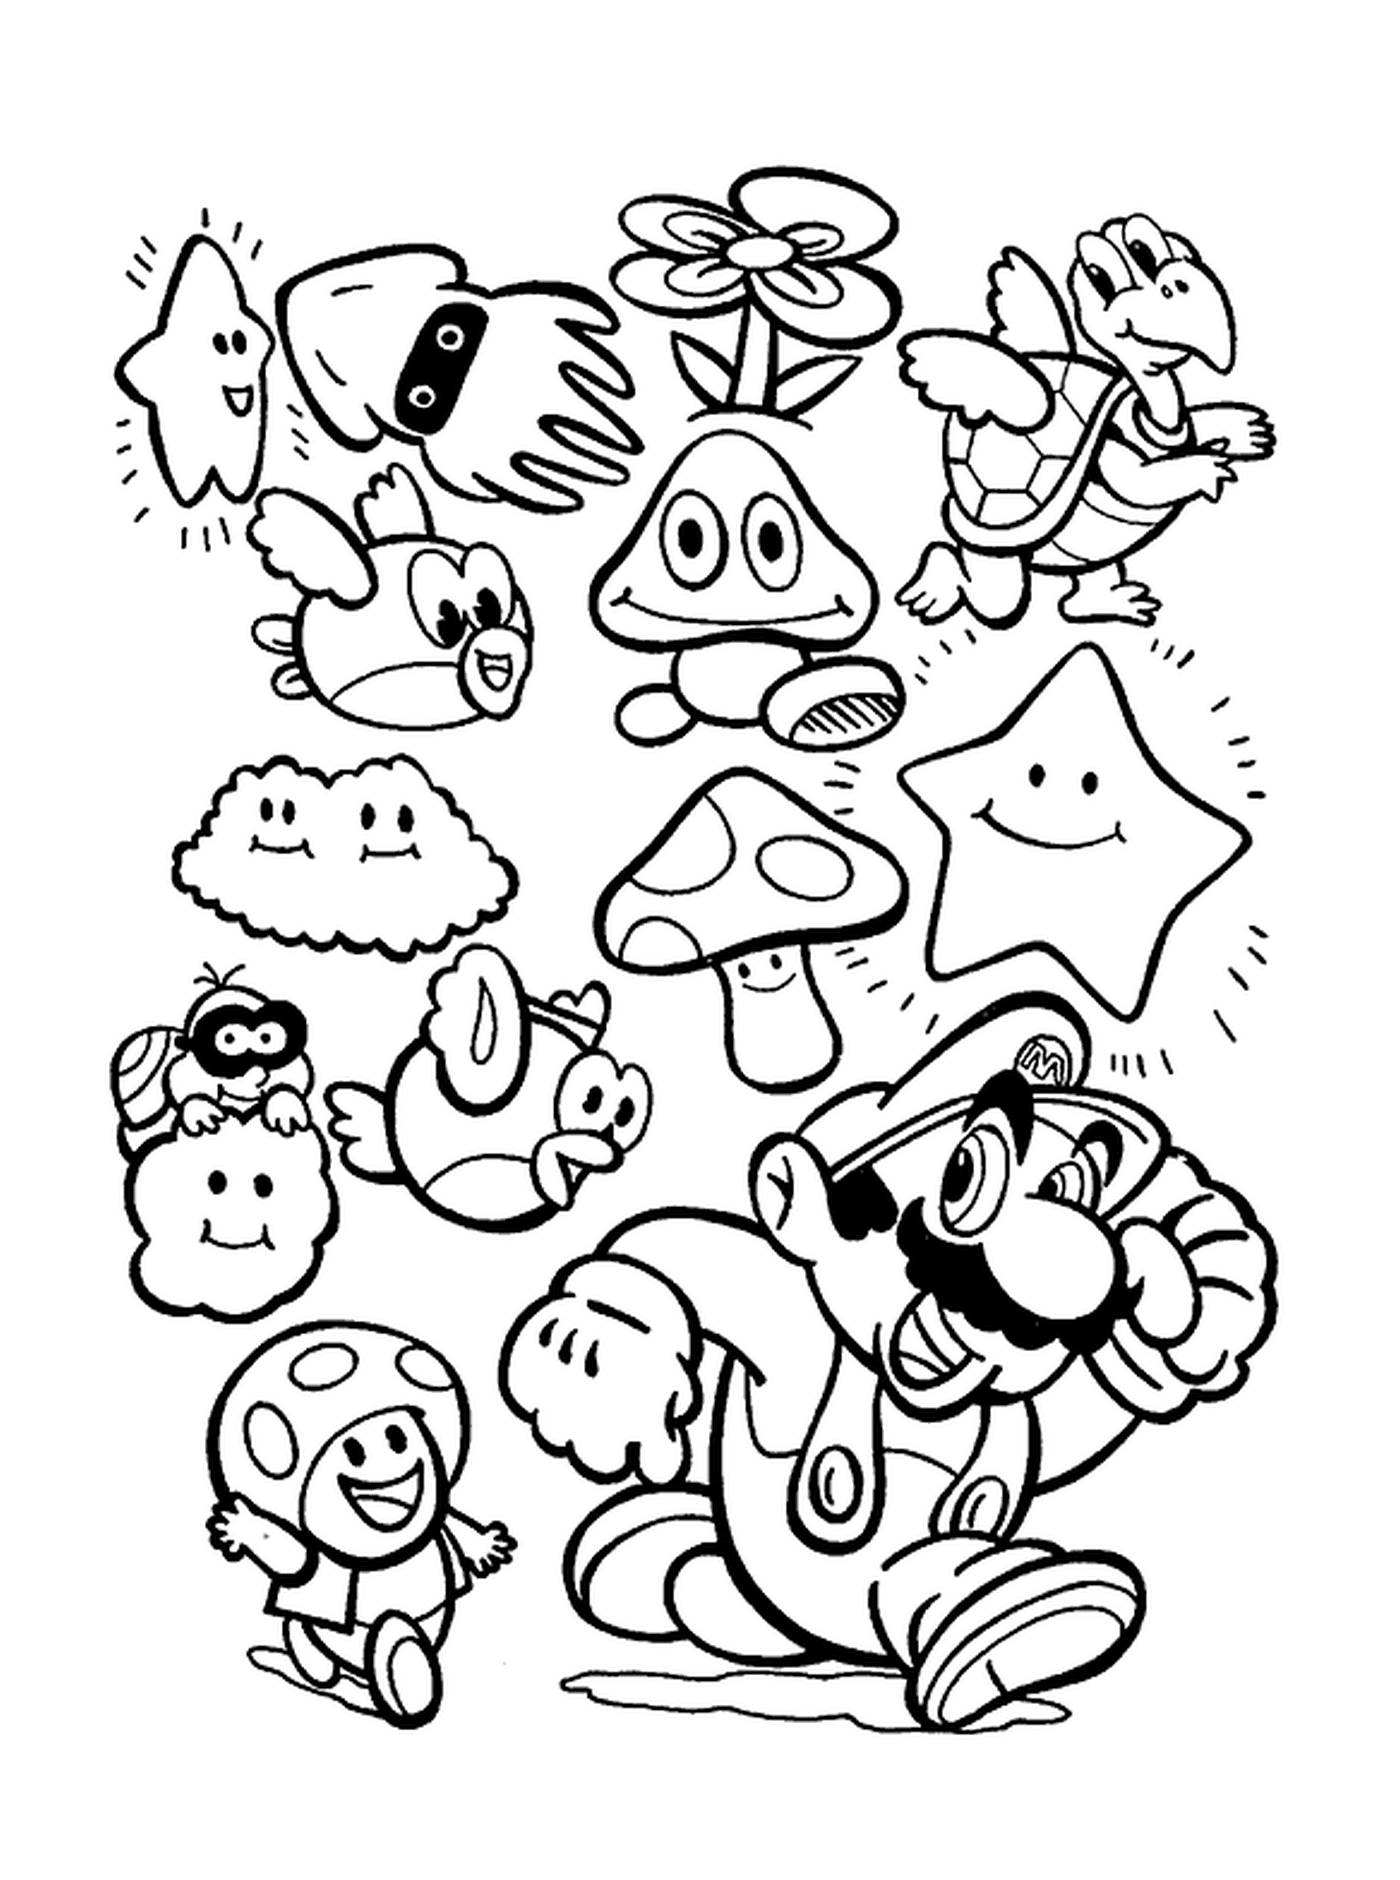  Marios Charaktere kommen zusammen 